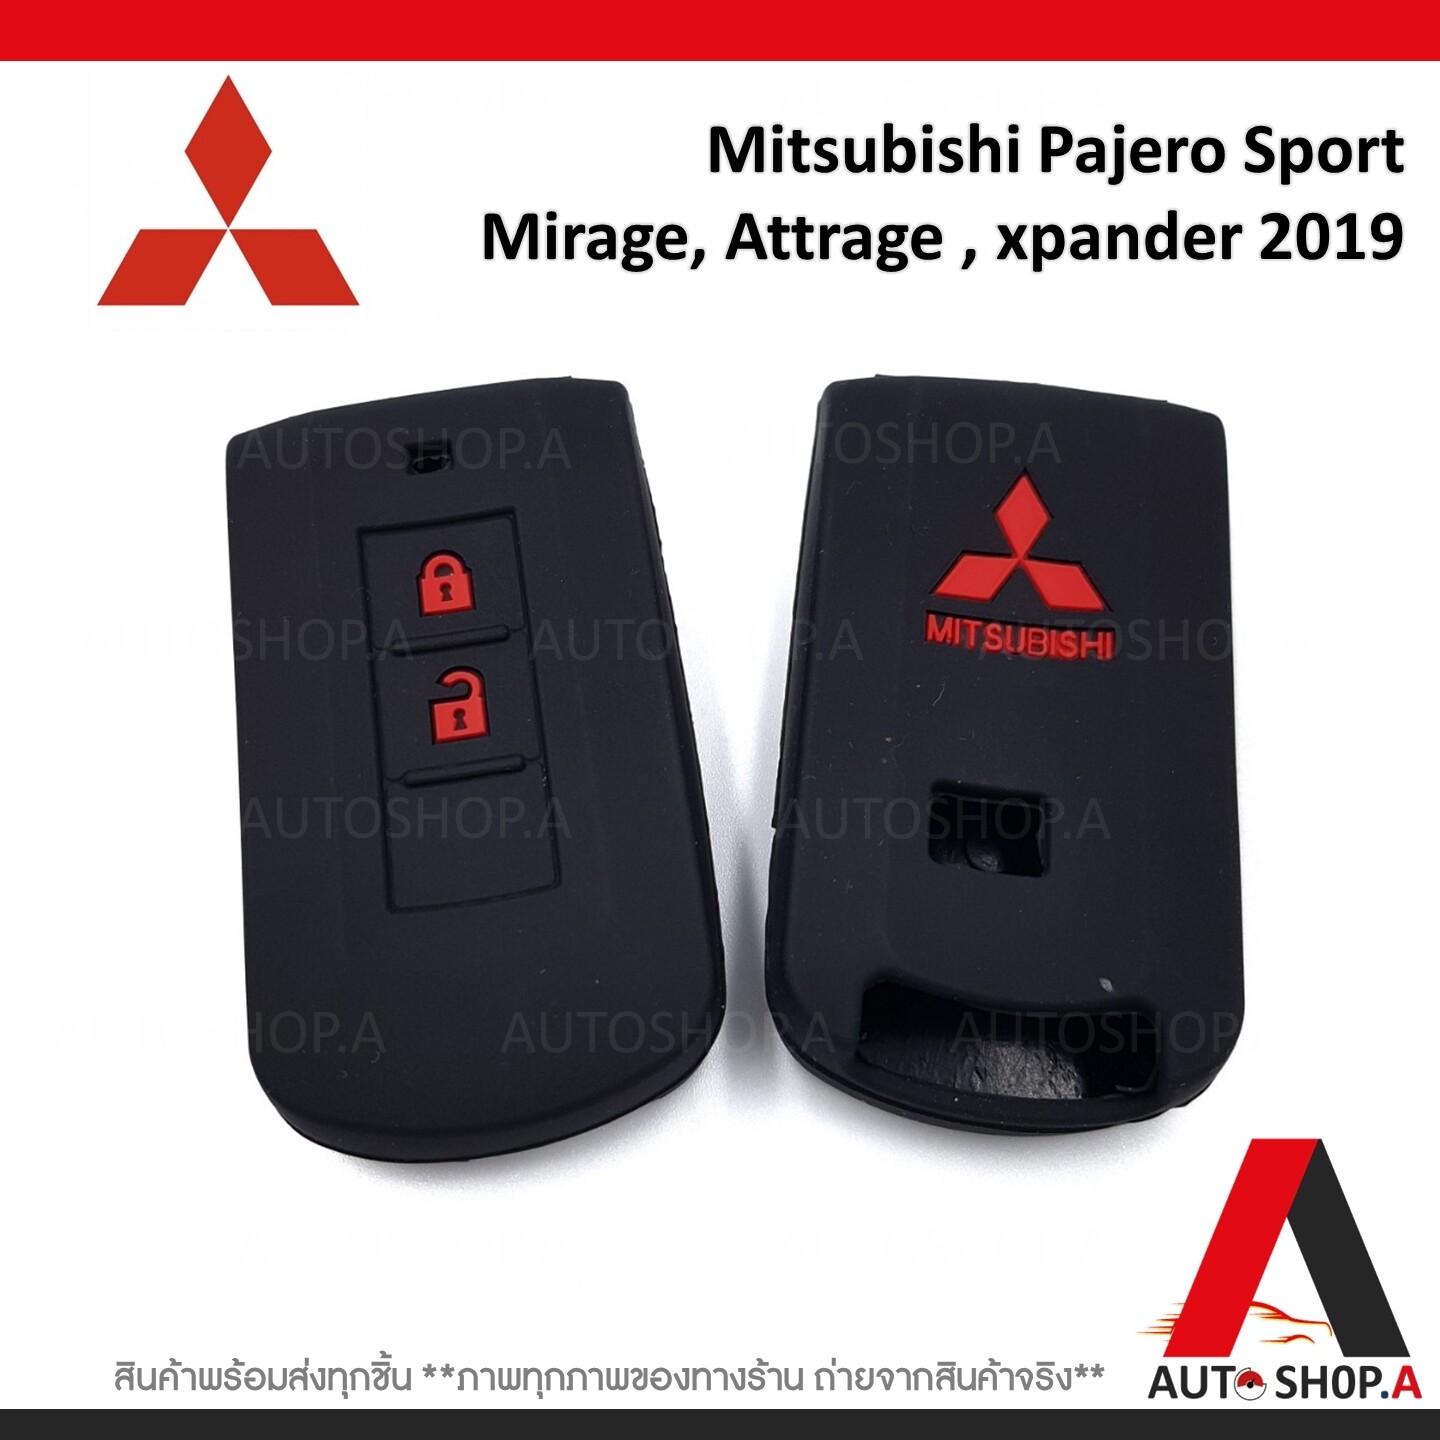 ซิลิโคนกุญแจ เคสกุญแจรถ ปลอกกุญแจ รถยนต์ Mitsubishi All New Pajero Sport ออนิว ปาเจโร่ สปอร์ต , Mirage มิราจ , Attrage แอคทาจ , New Triton ออนิว ไททัน , mitsubishi xpander 2019 คุณภาพดีเกรดA สีดำปุ่มกดแดง